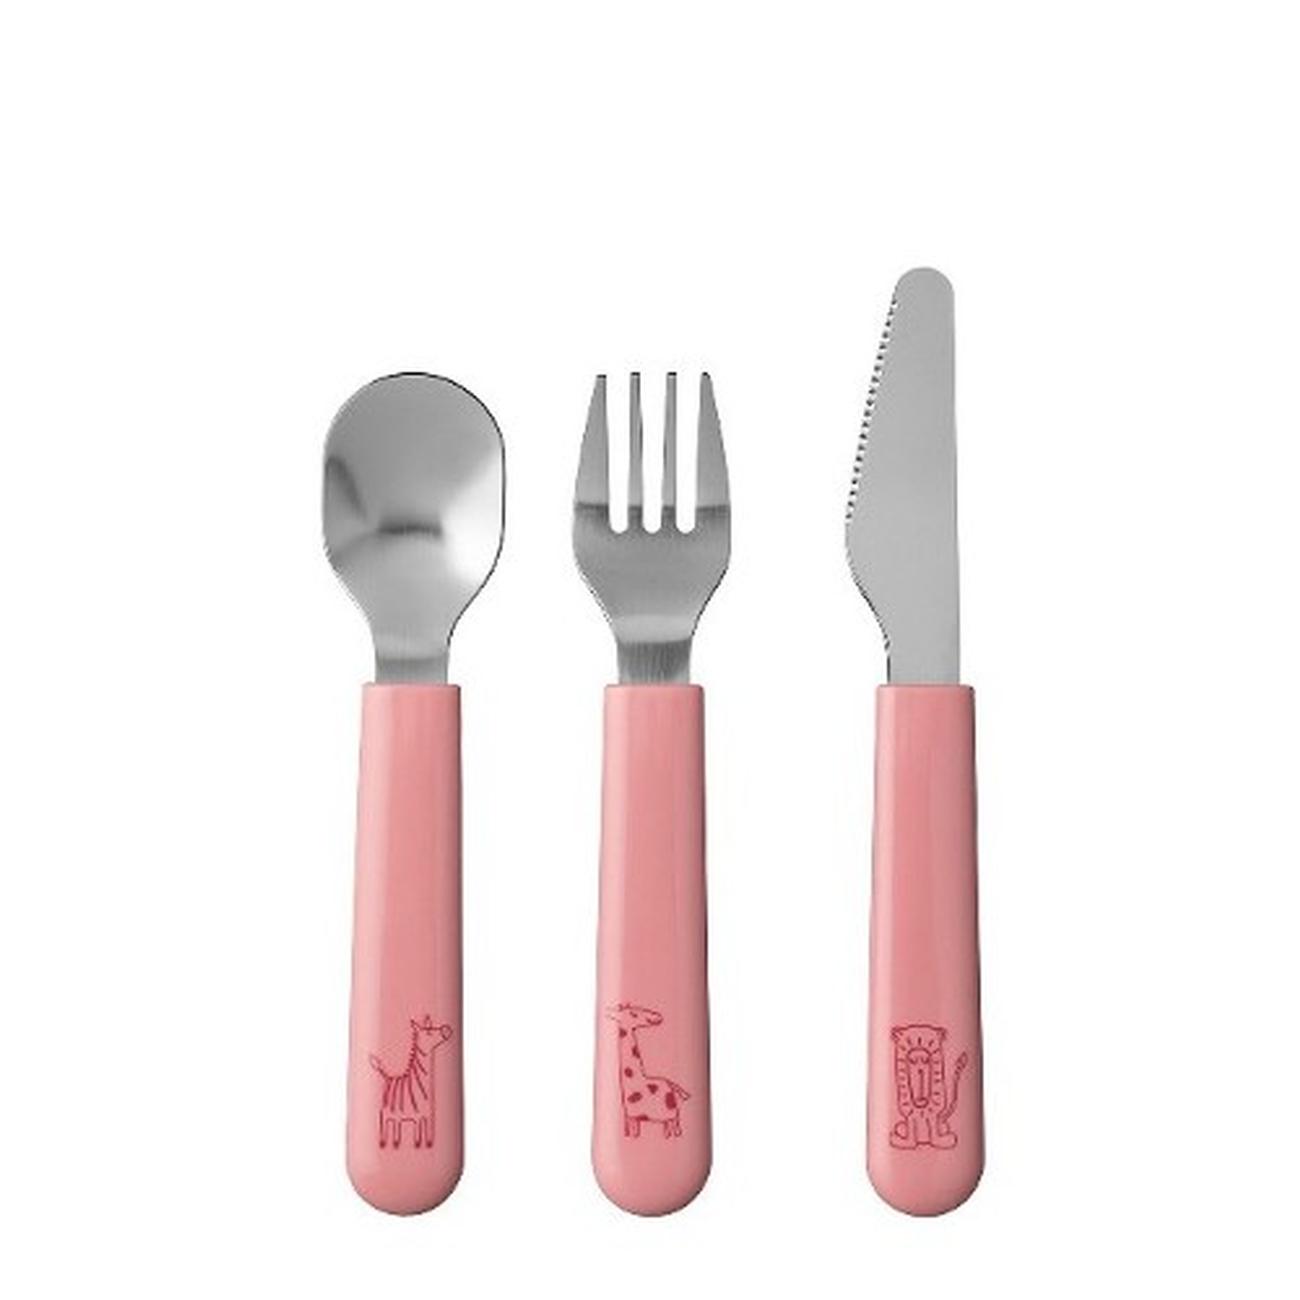 mepal-mio-childrens-cutlery-set-3pc-deep-pink - Mepal Mio 3pc Children's Cutlery Set Deep Pink